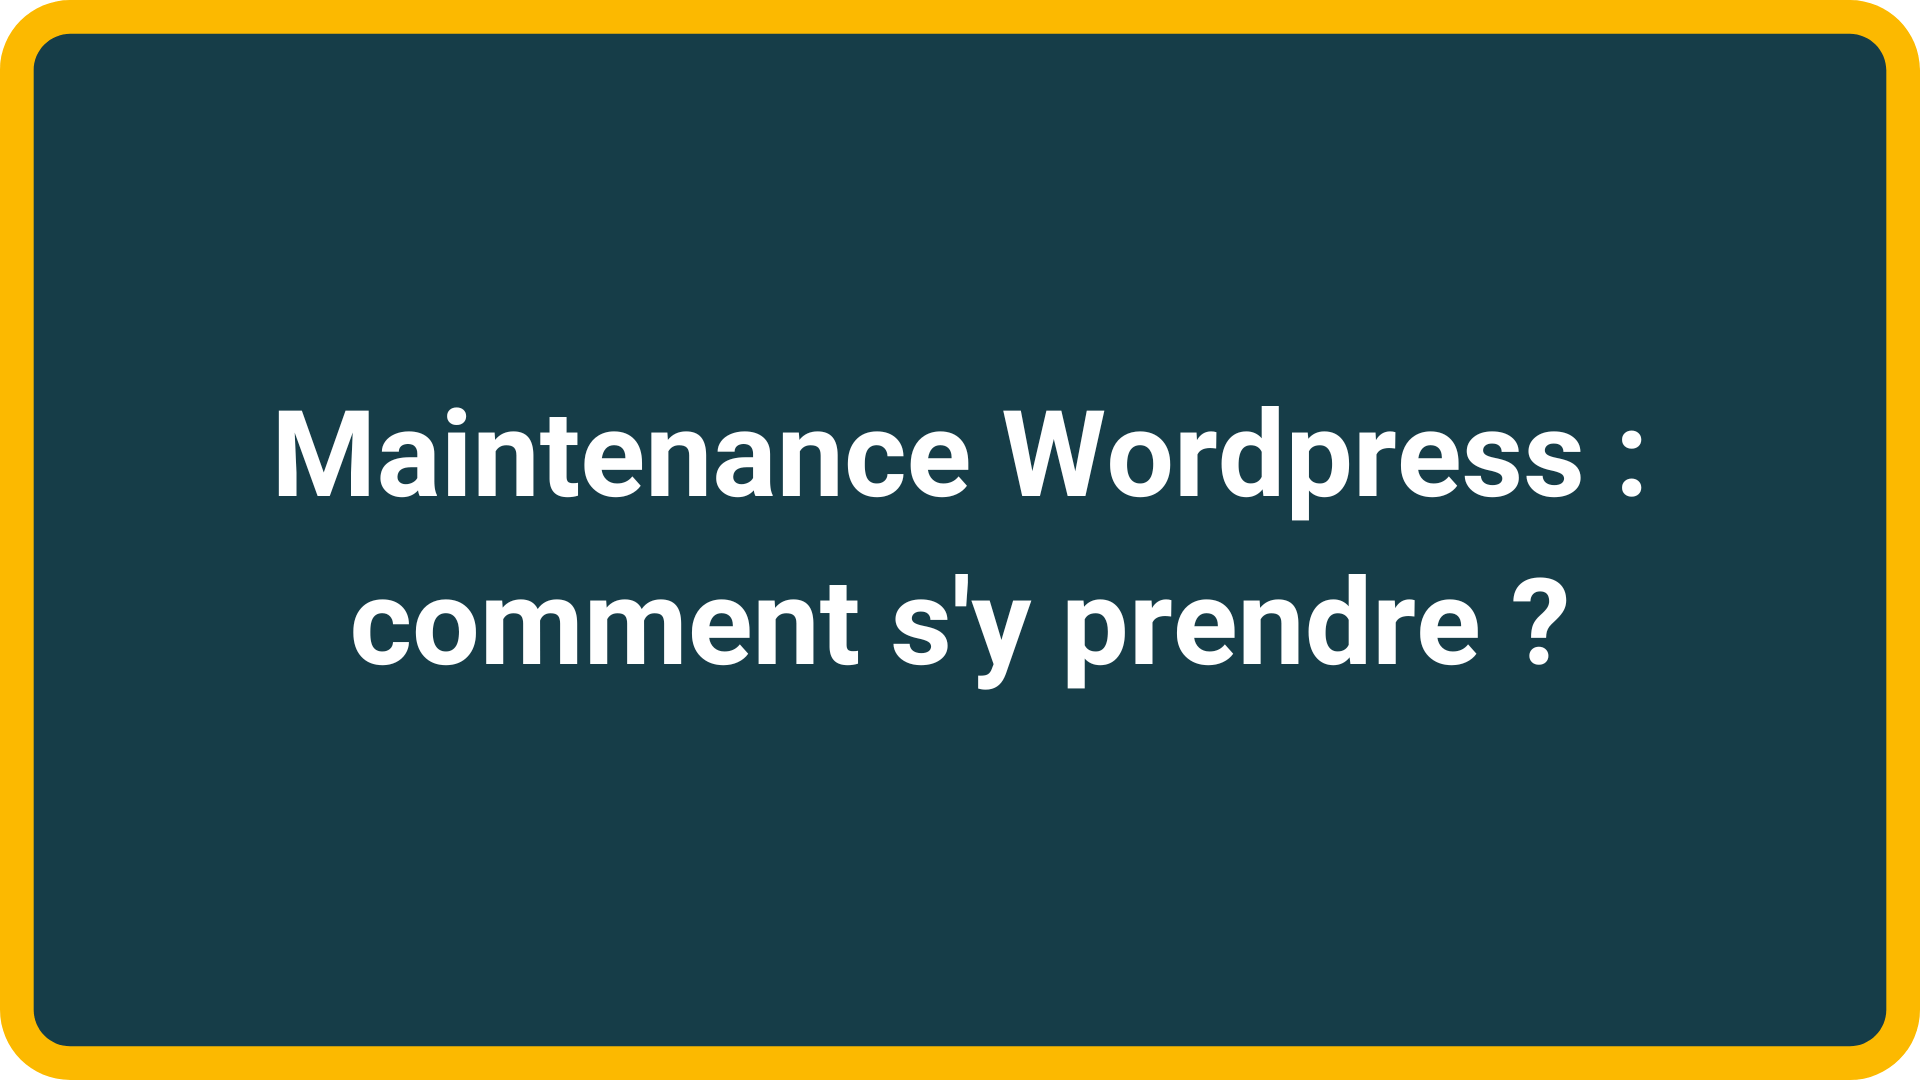 Maintenance Wordpress comment s'y prendre